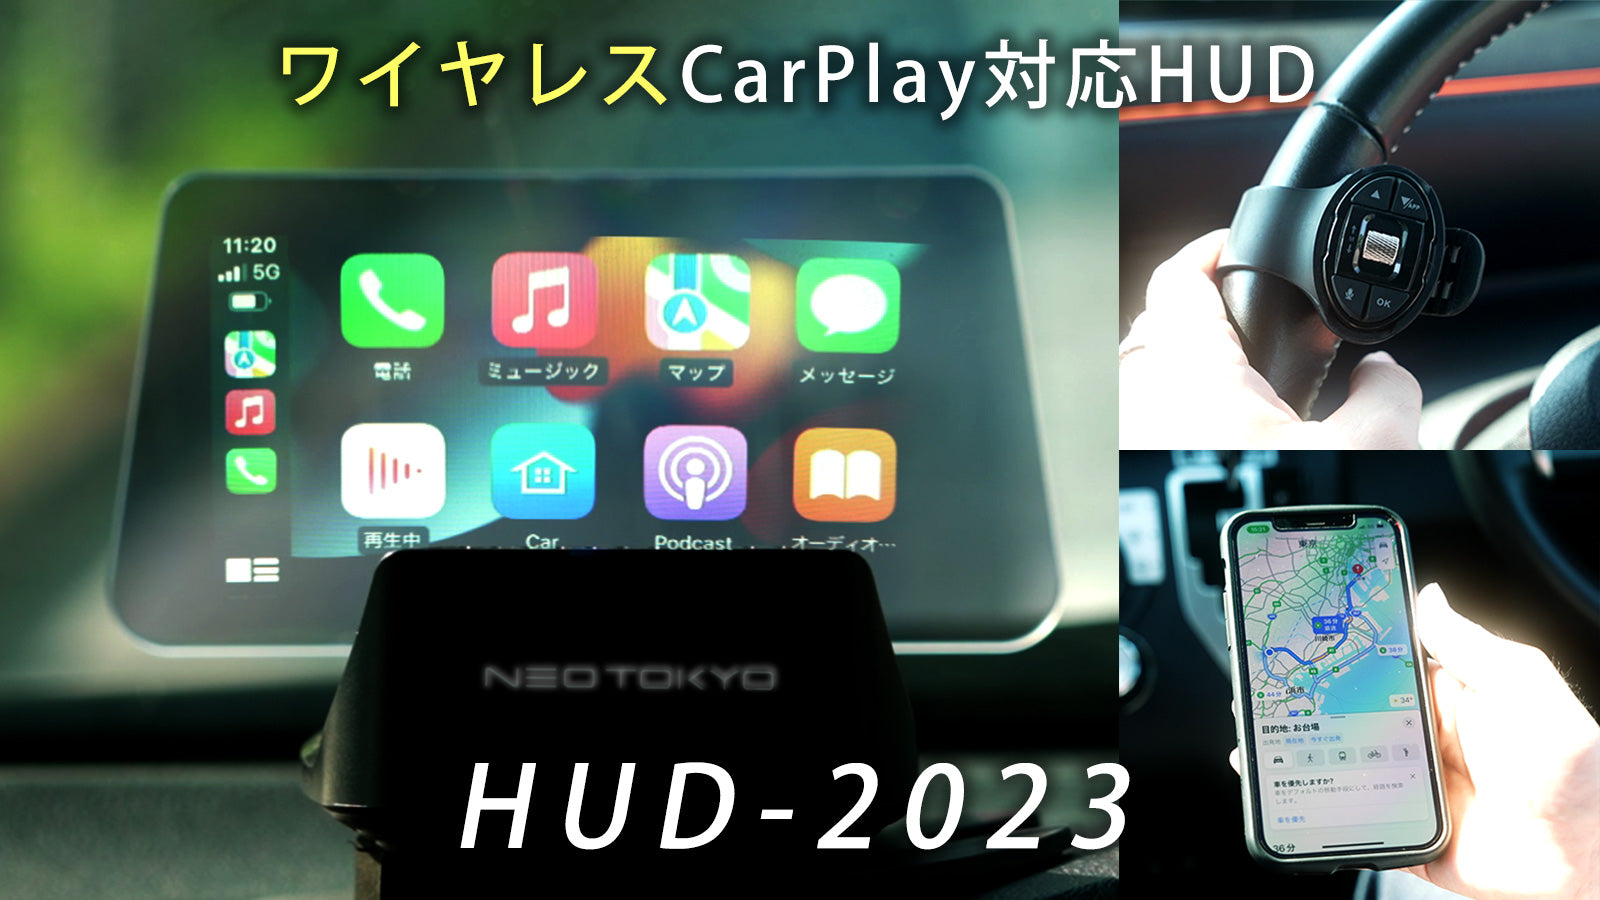 HUD-2023 ヘッドアップディスプレイ